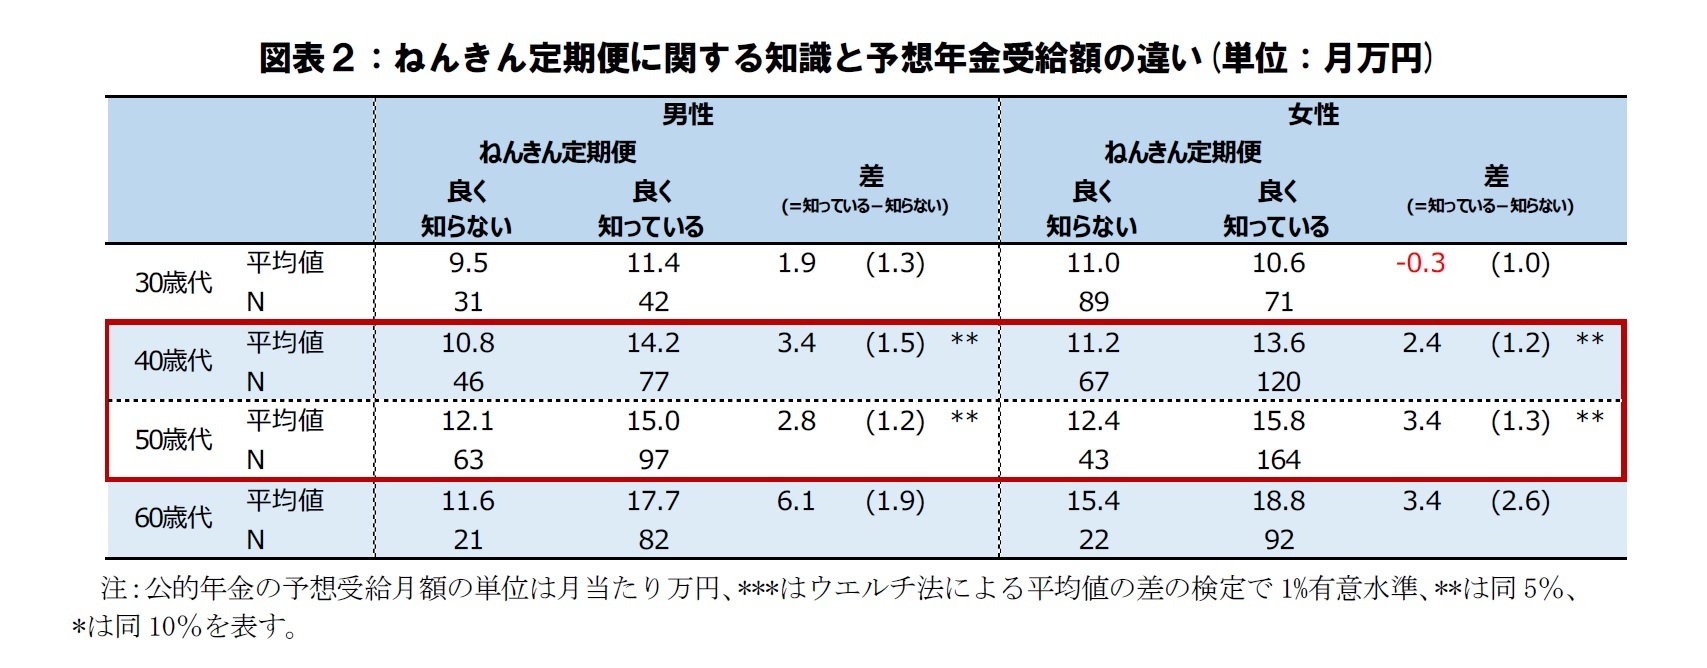 図表２：ねんきん定期便に関する知識と予想年金受給額の違い(単位：月万円)